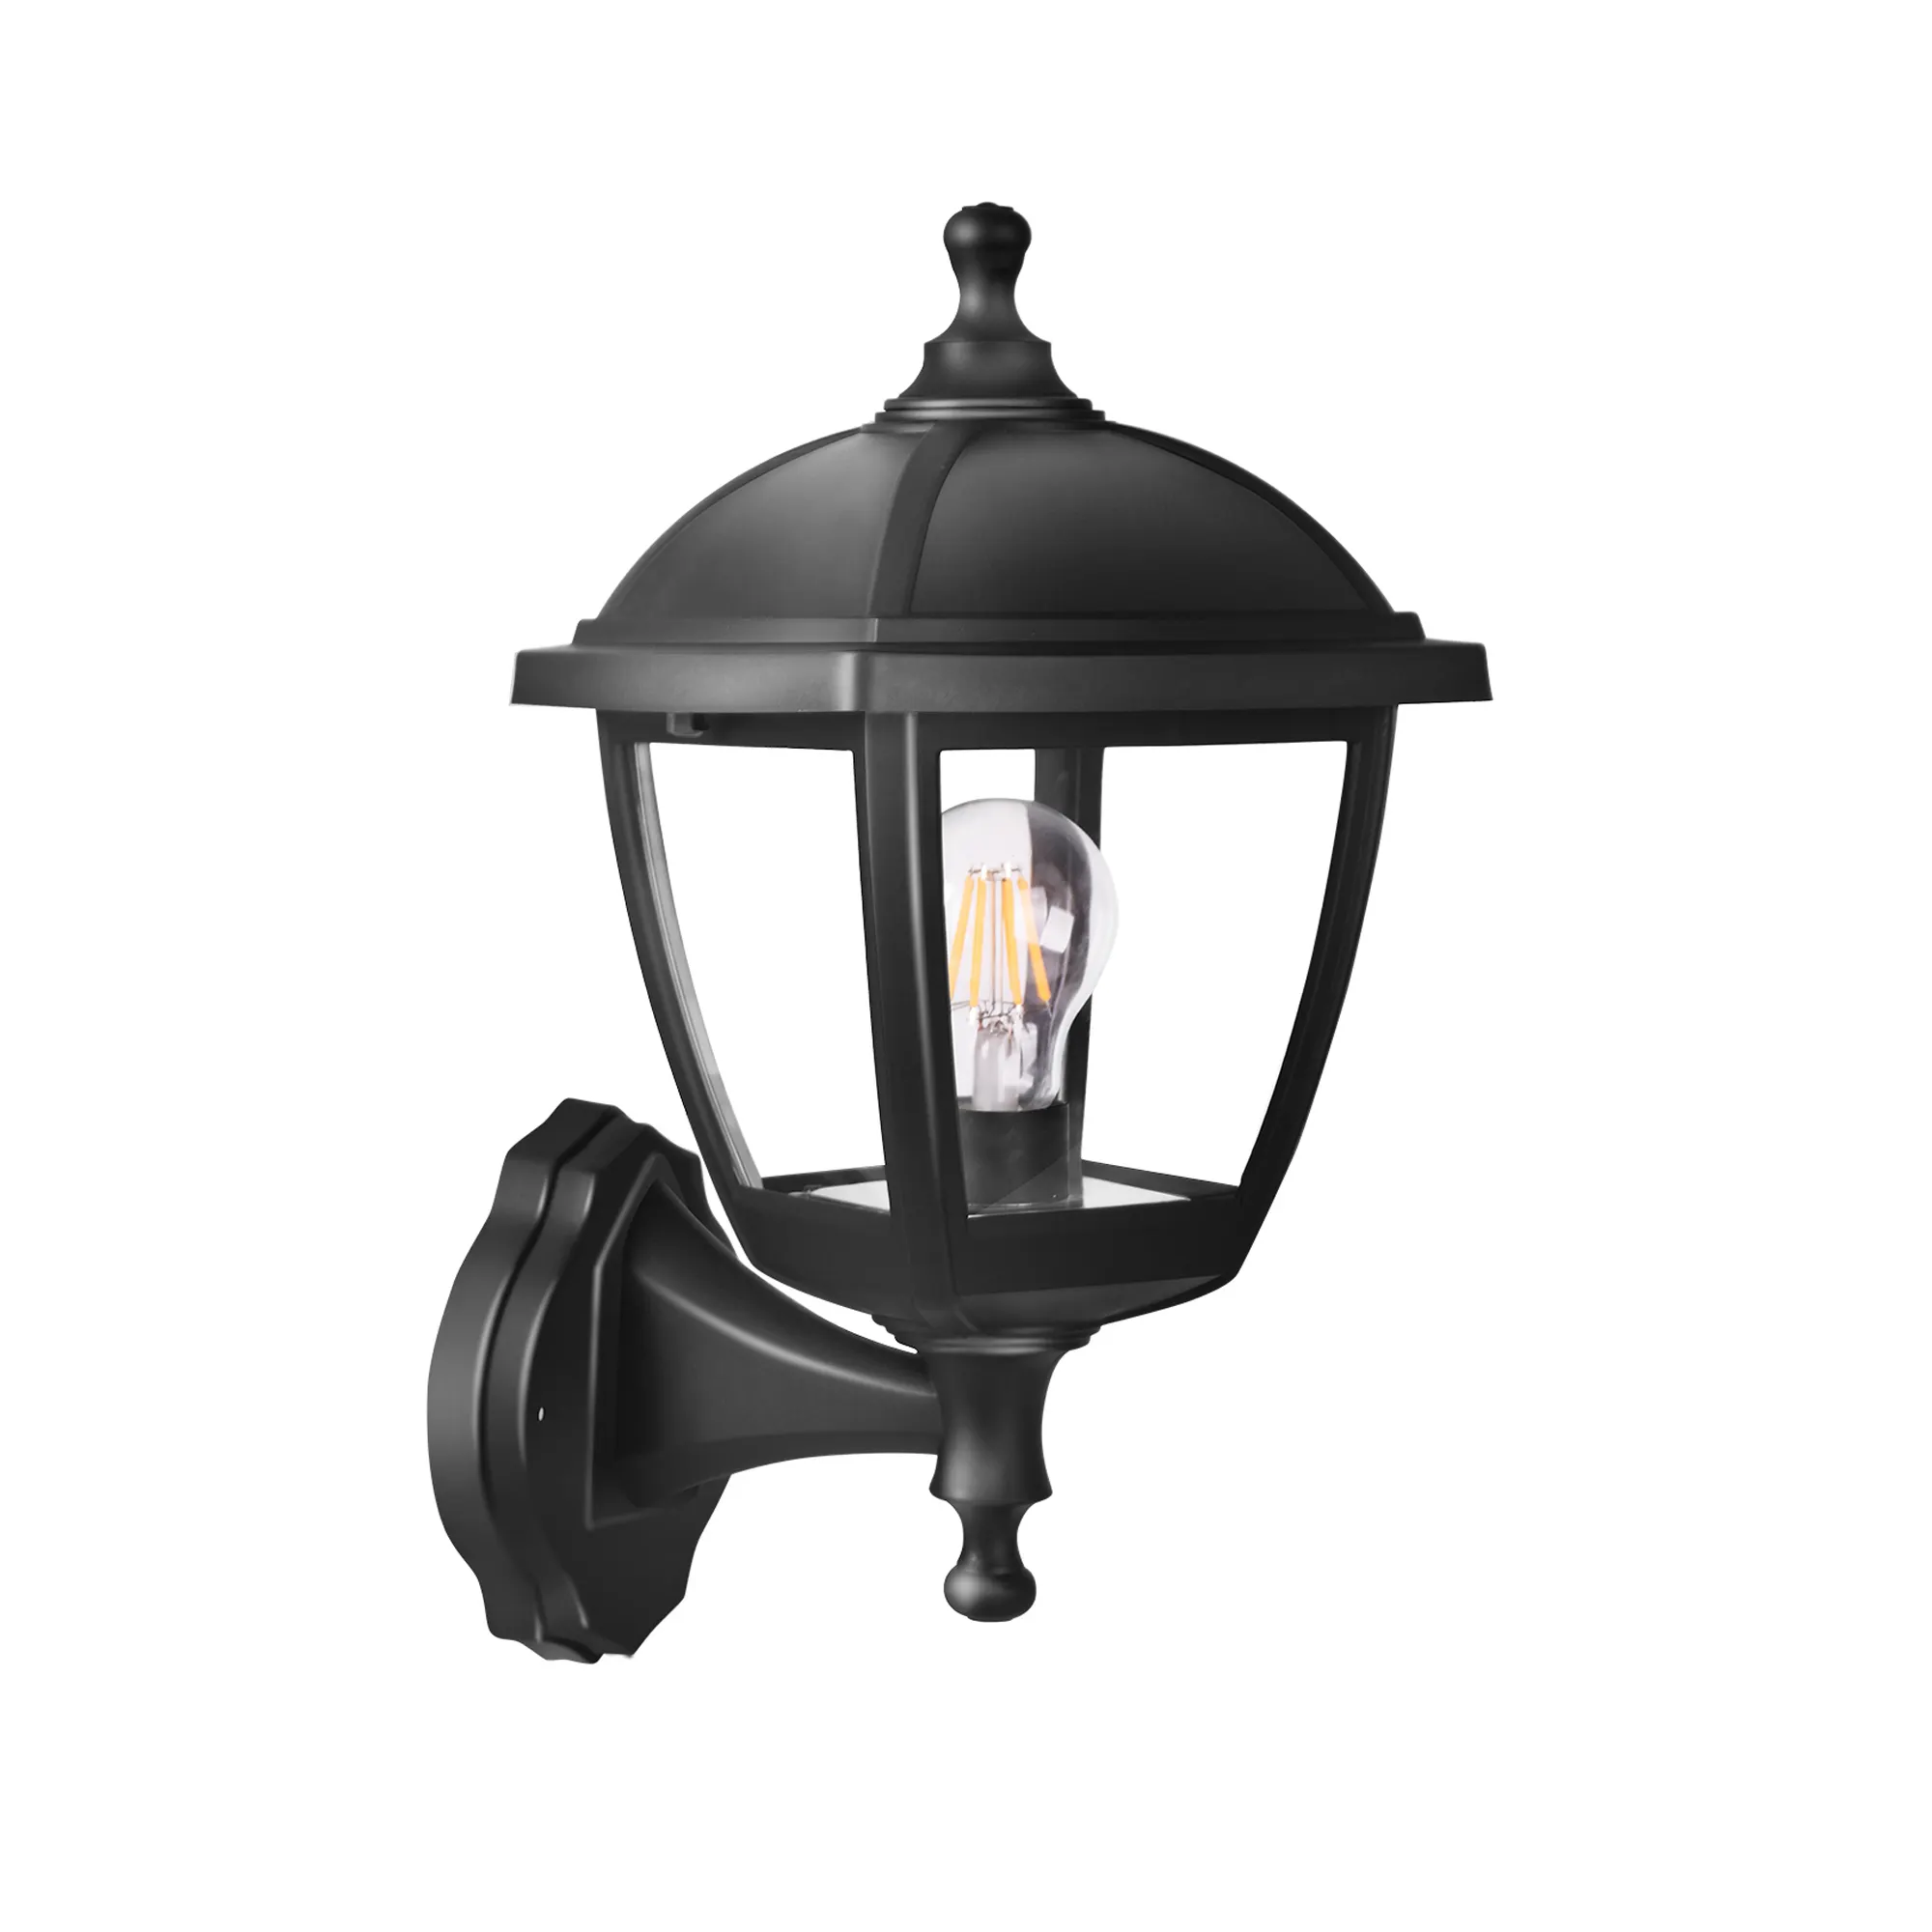 P416 Etl Goedkeuring Exterieur E27 Lamp Outdoor Plastic Materiaal Wandlamp Armaturen Voor Buitenmuur Verlichting